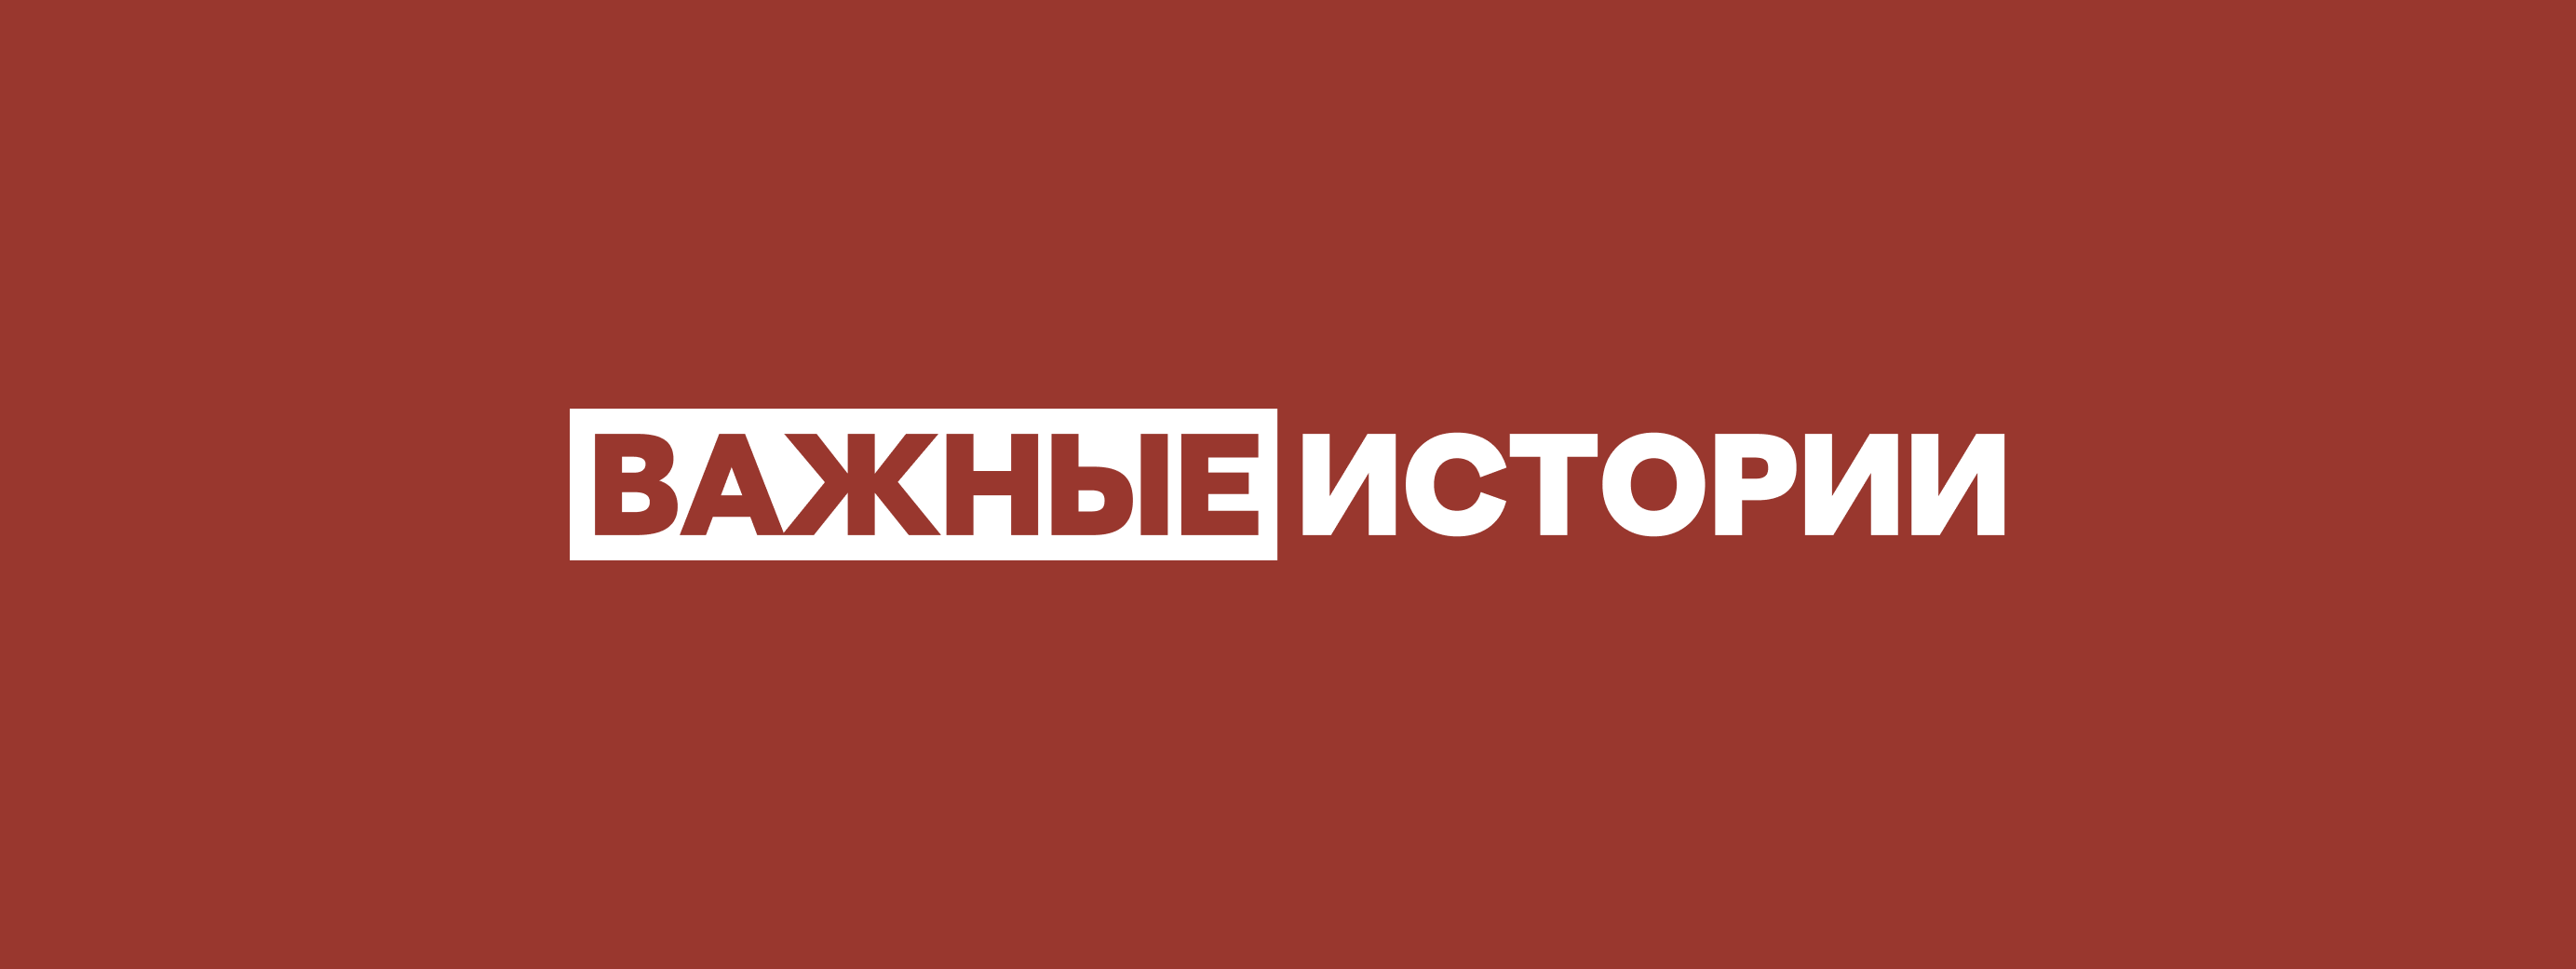 Vazhnyye Istorii/Important Stories Logo